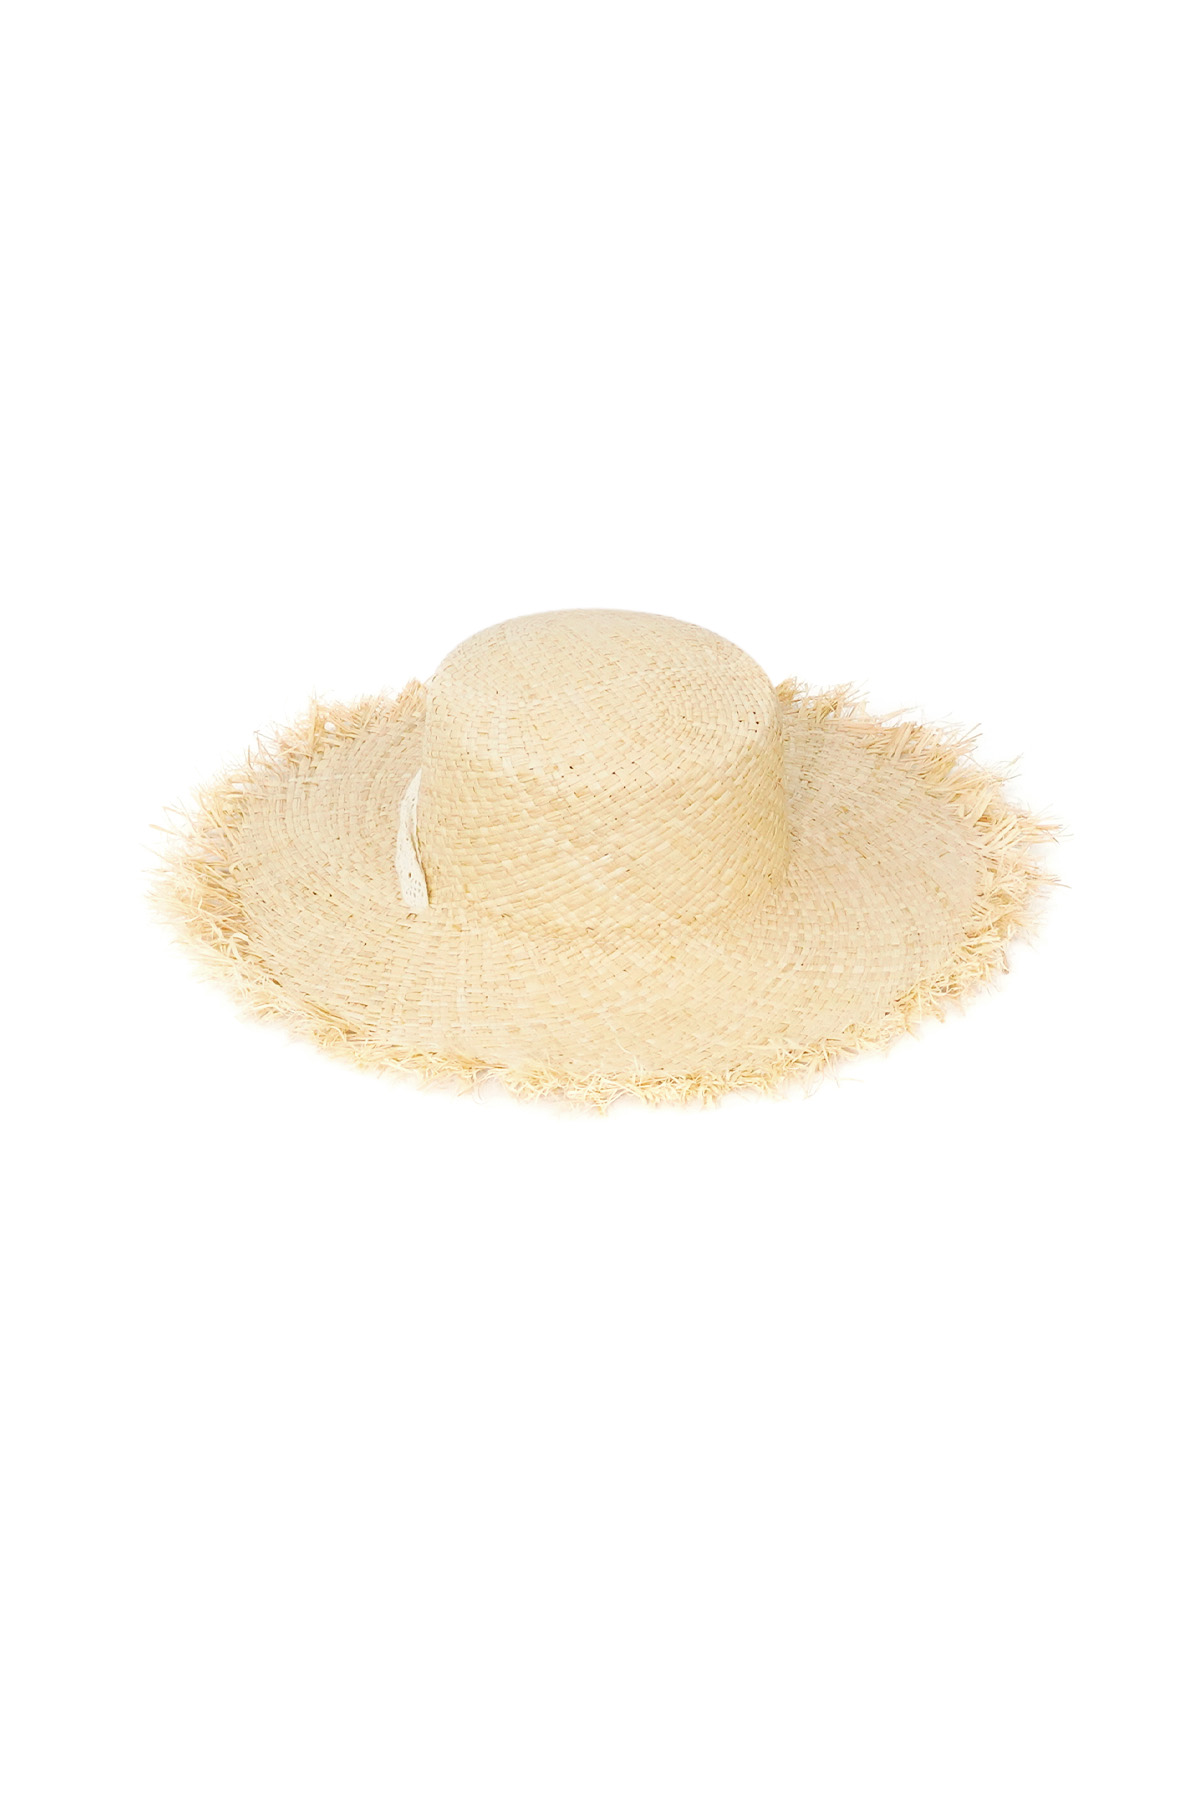 Cappello da spiaggia - bianco sporco h5 Immagine5